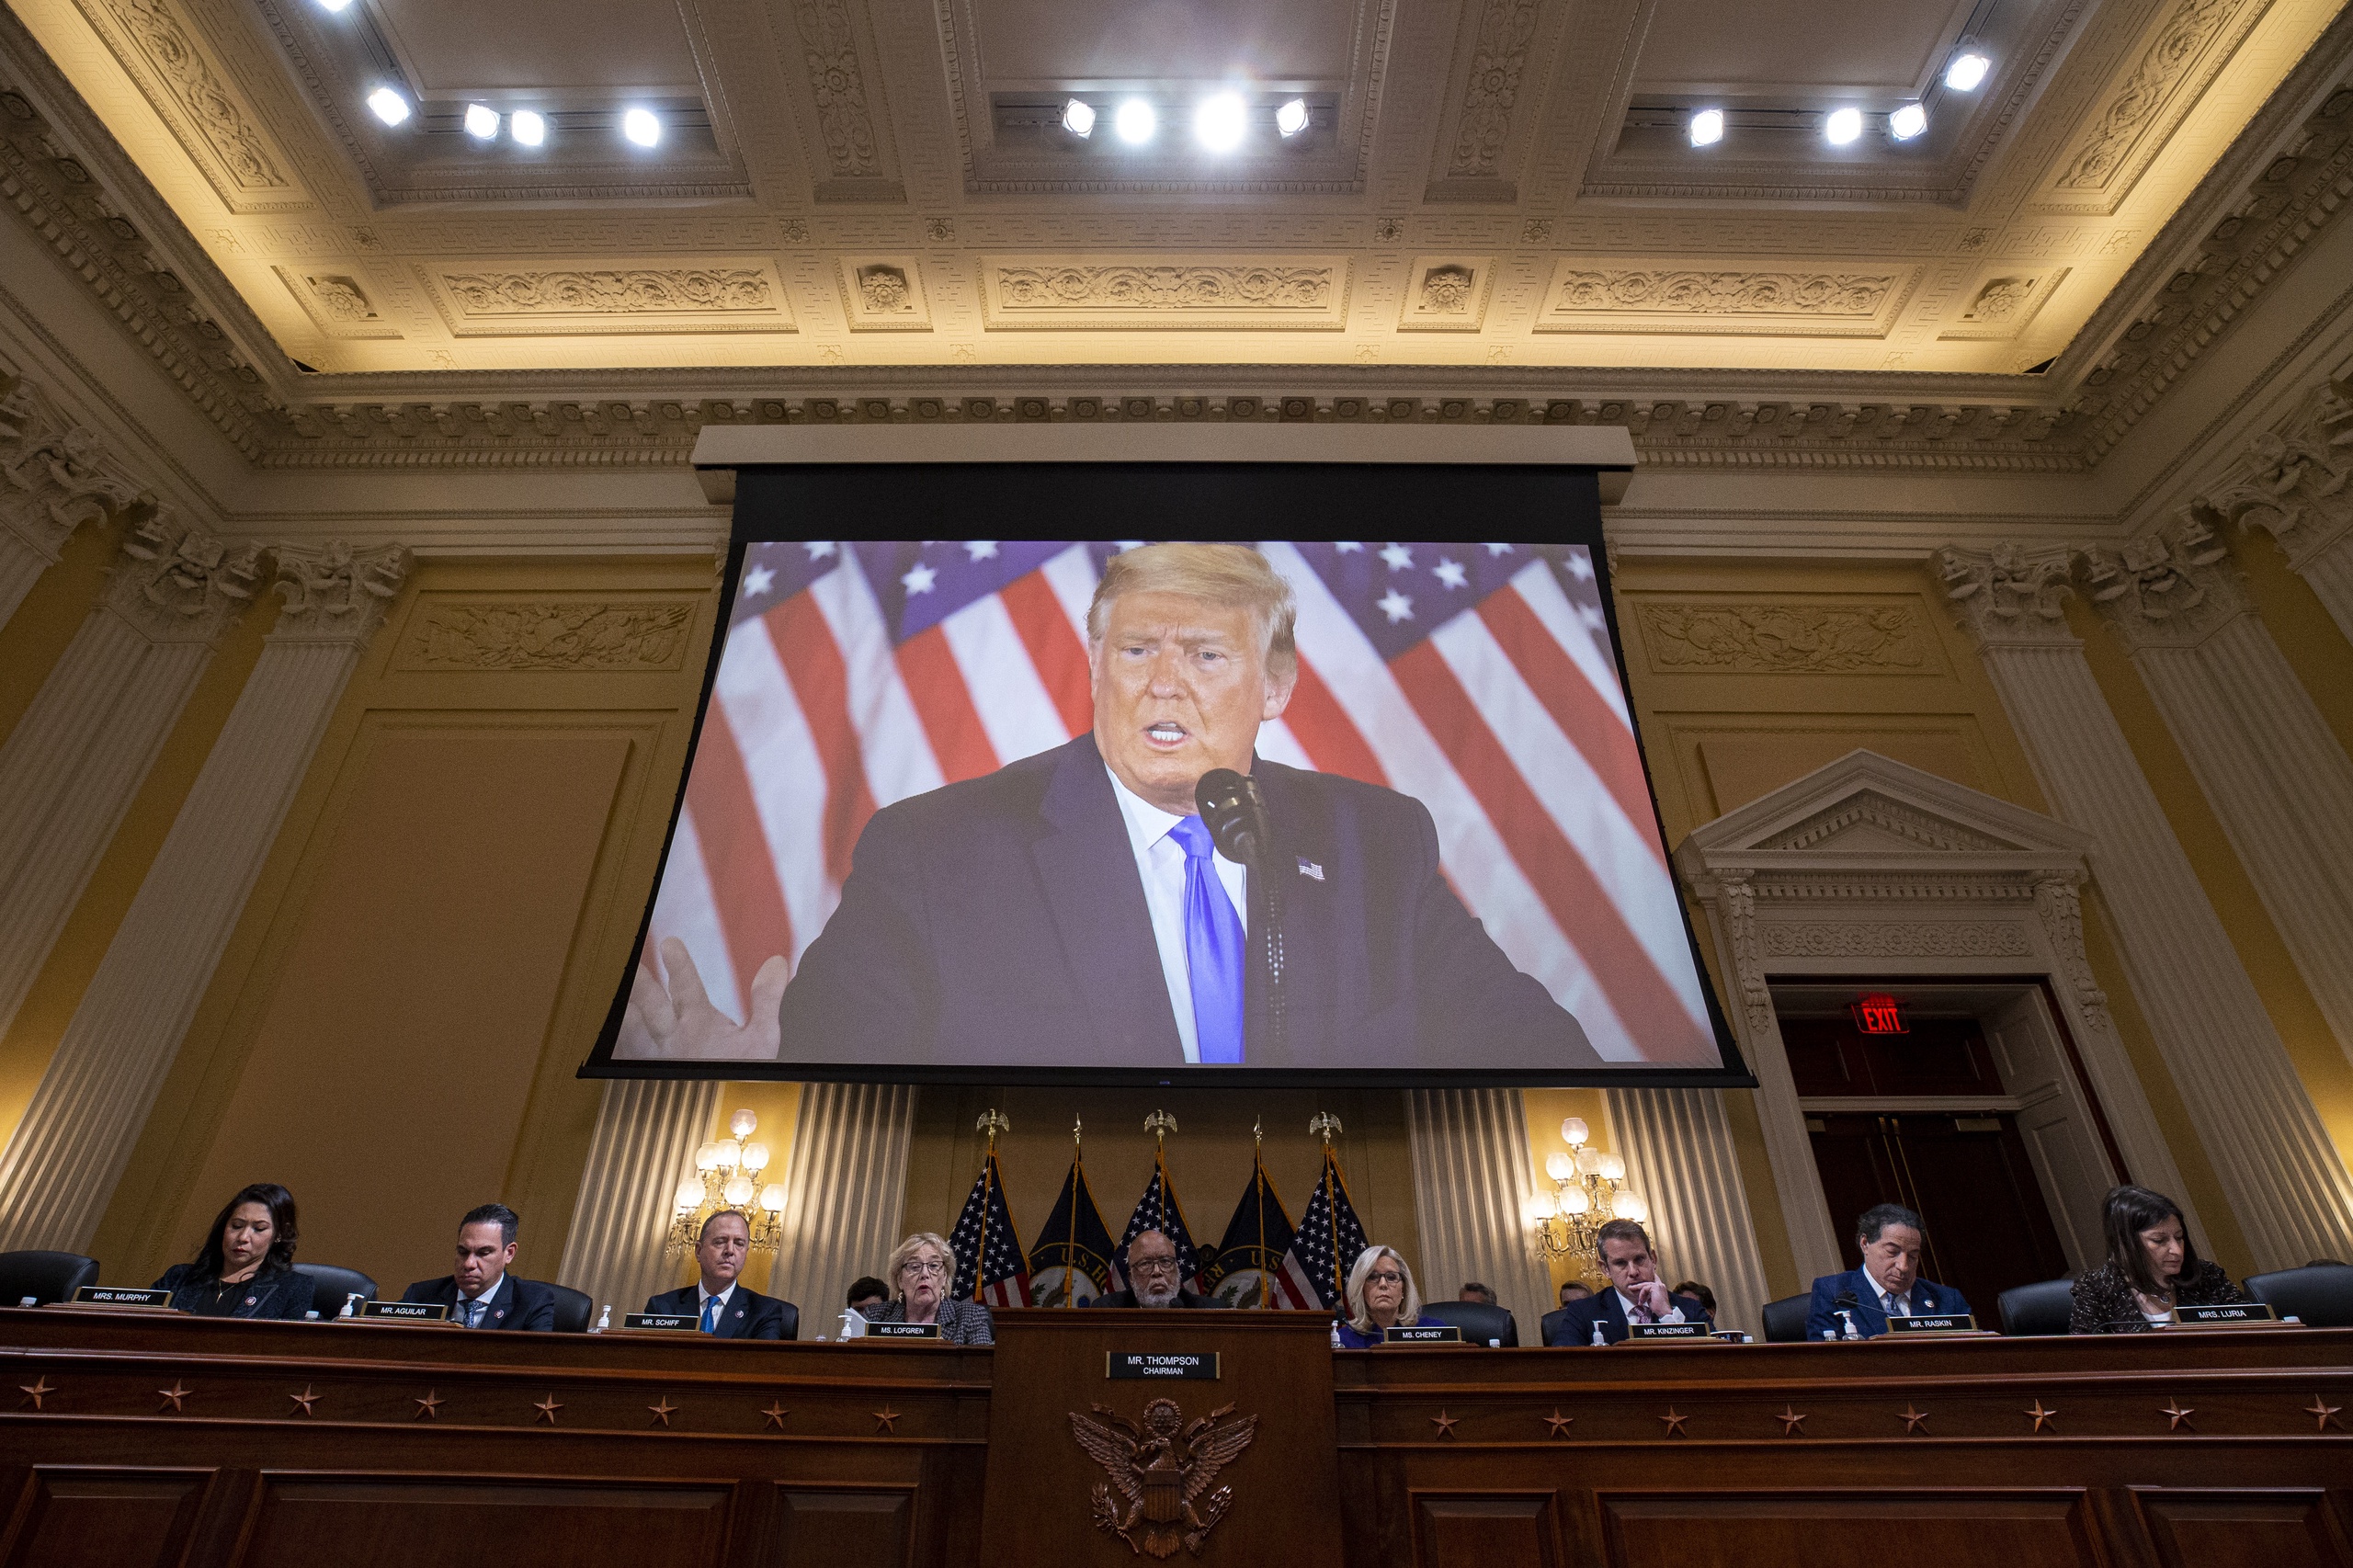 De commissie van het Amerikaanse Huis van Afgevaardigden die de bestorming van het Capitool op 6 januari 2021 onderzoekt, heeft de dagvaarding van ex-president Donald Trump ingetrokken.